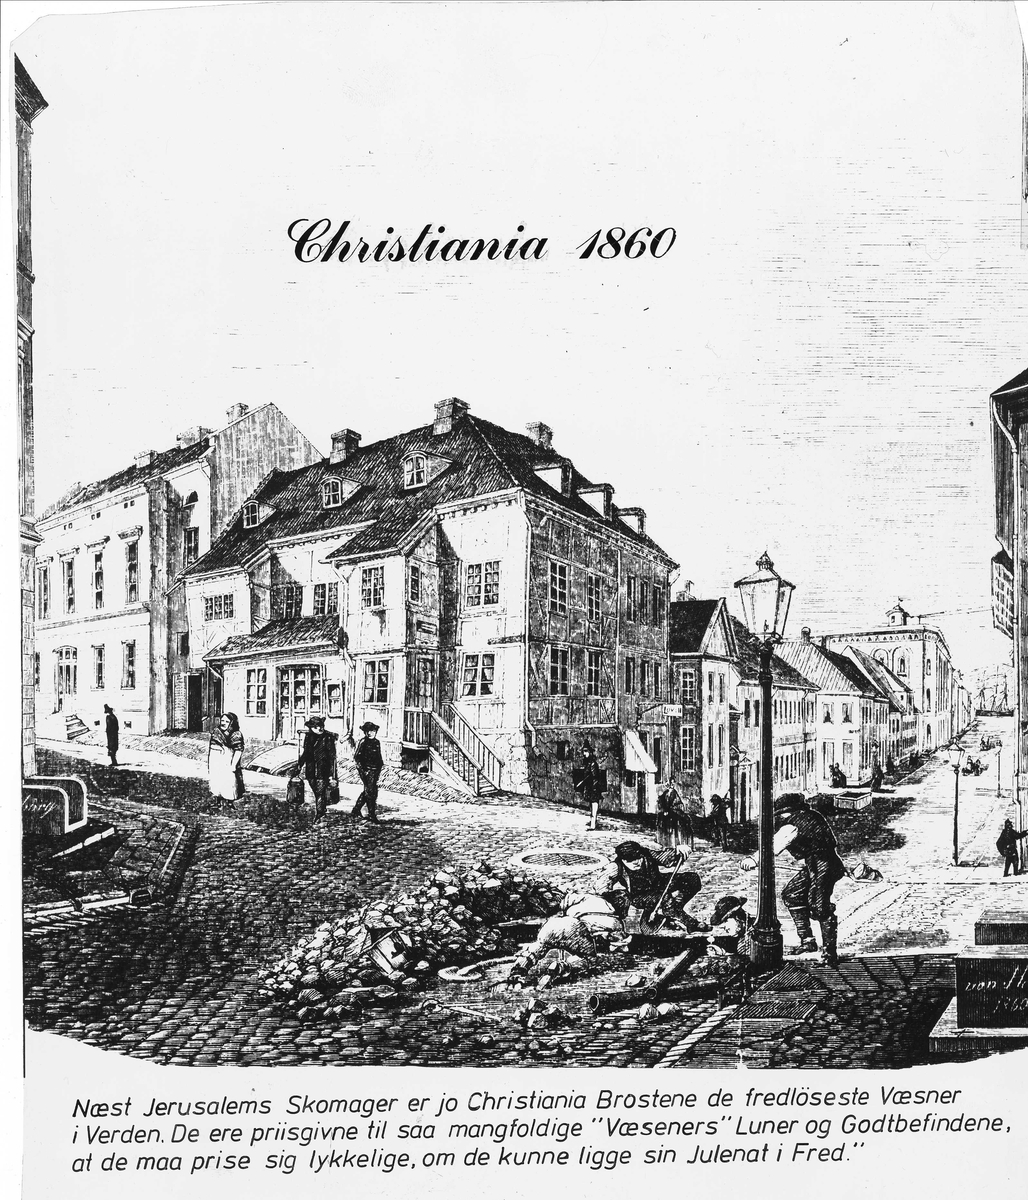 Nedlegging av kabel Christiania 1860